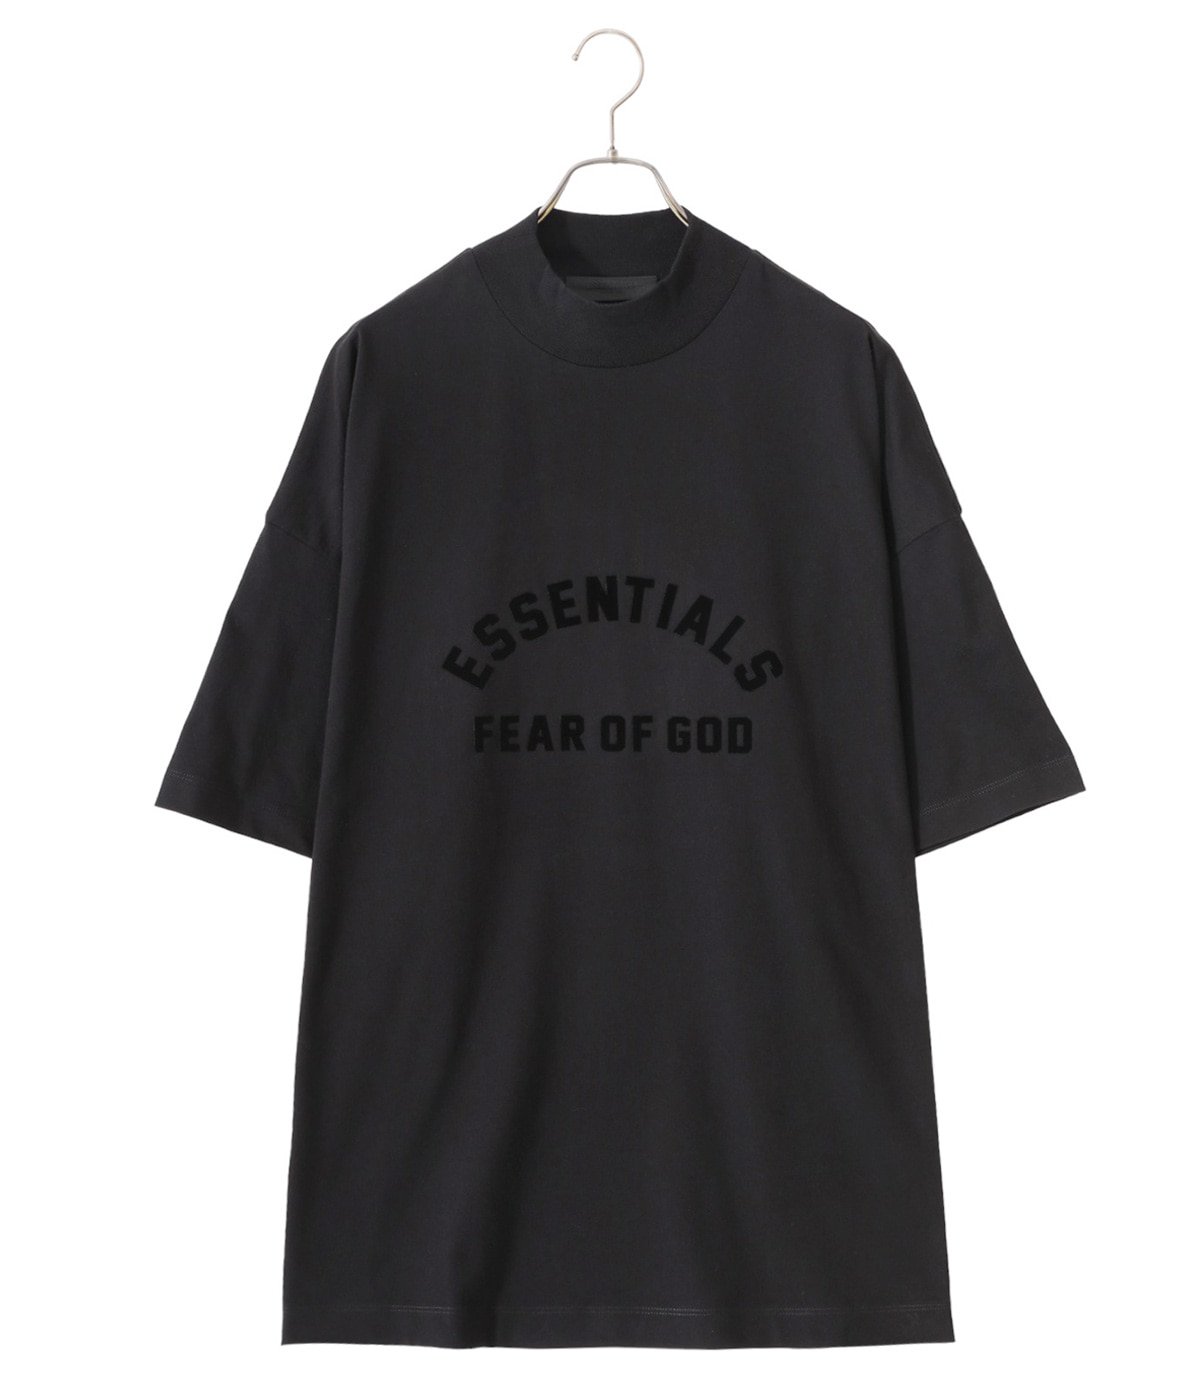 Fear of God ESSENTIALS 黒 Tシャツ - Tシャツ/カットソー(半袖/袖なし)